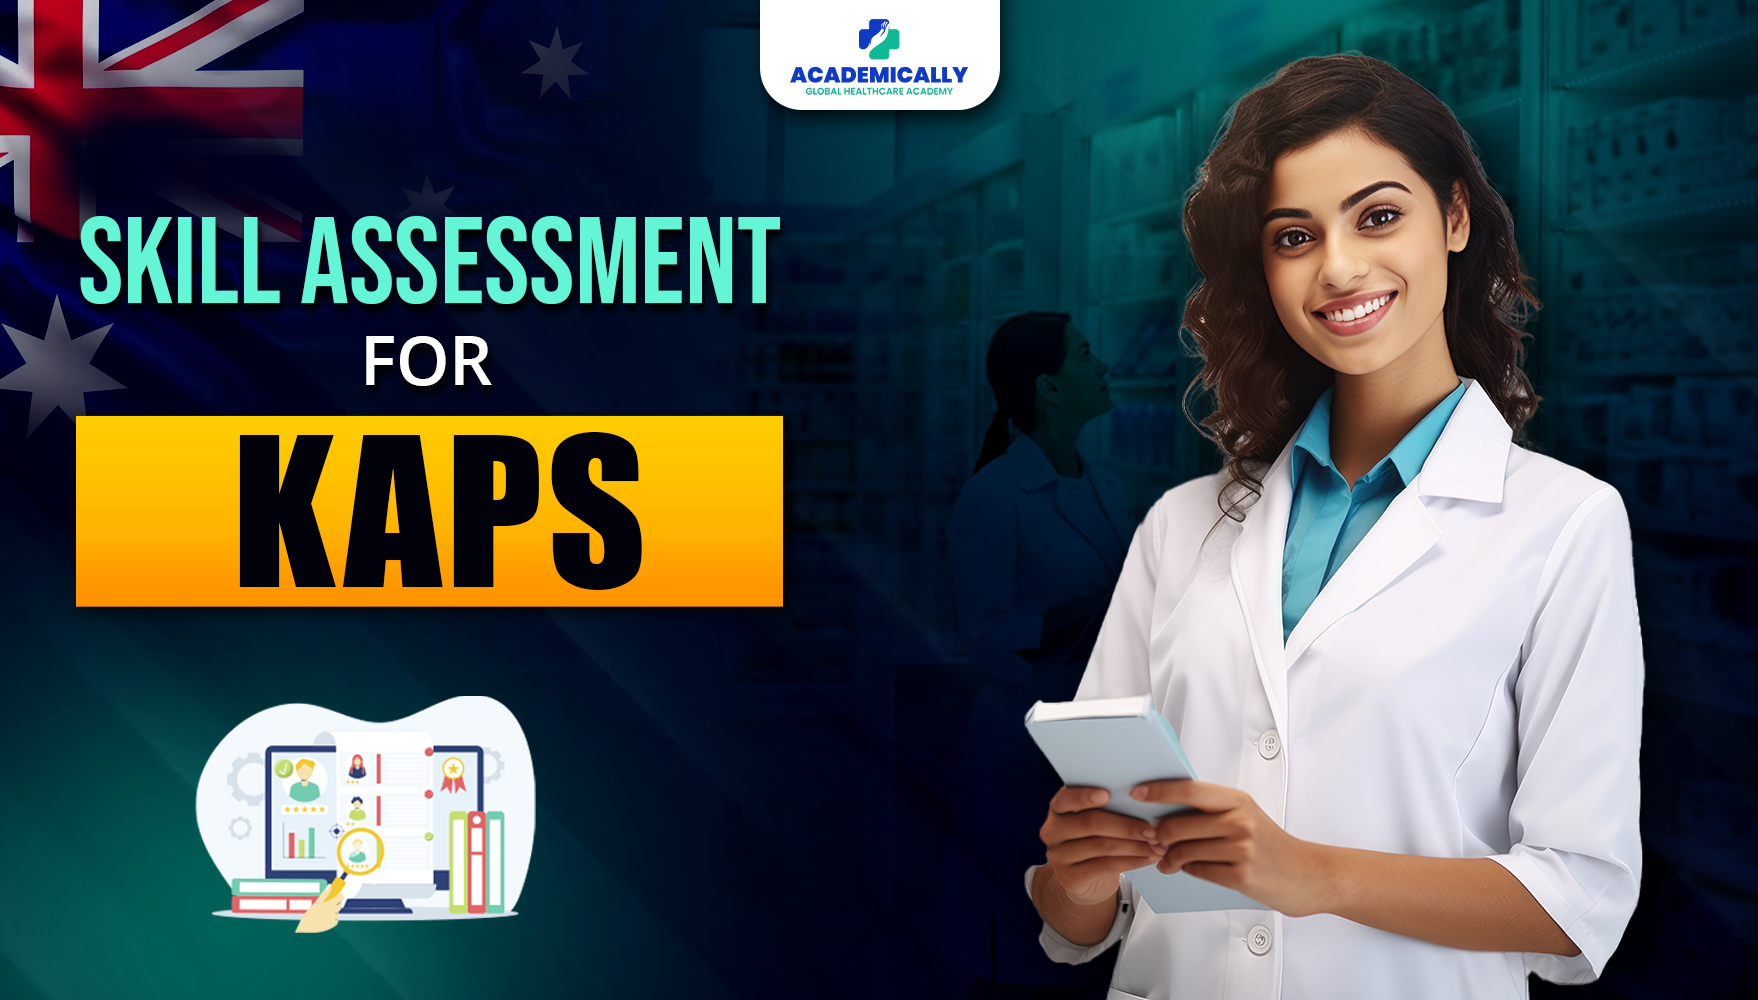 Skills Assessment for KAPS